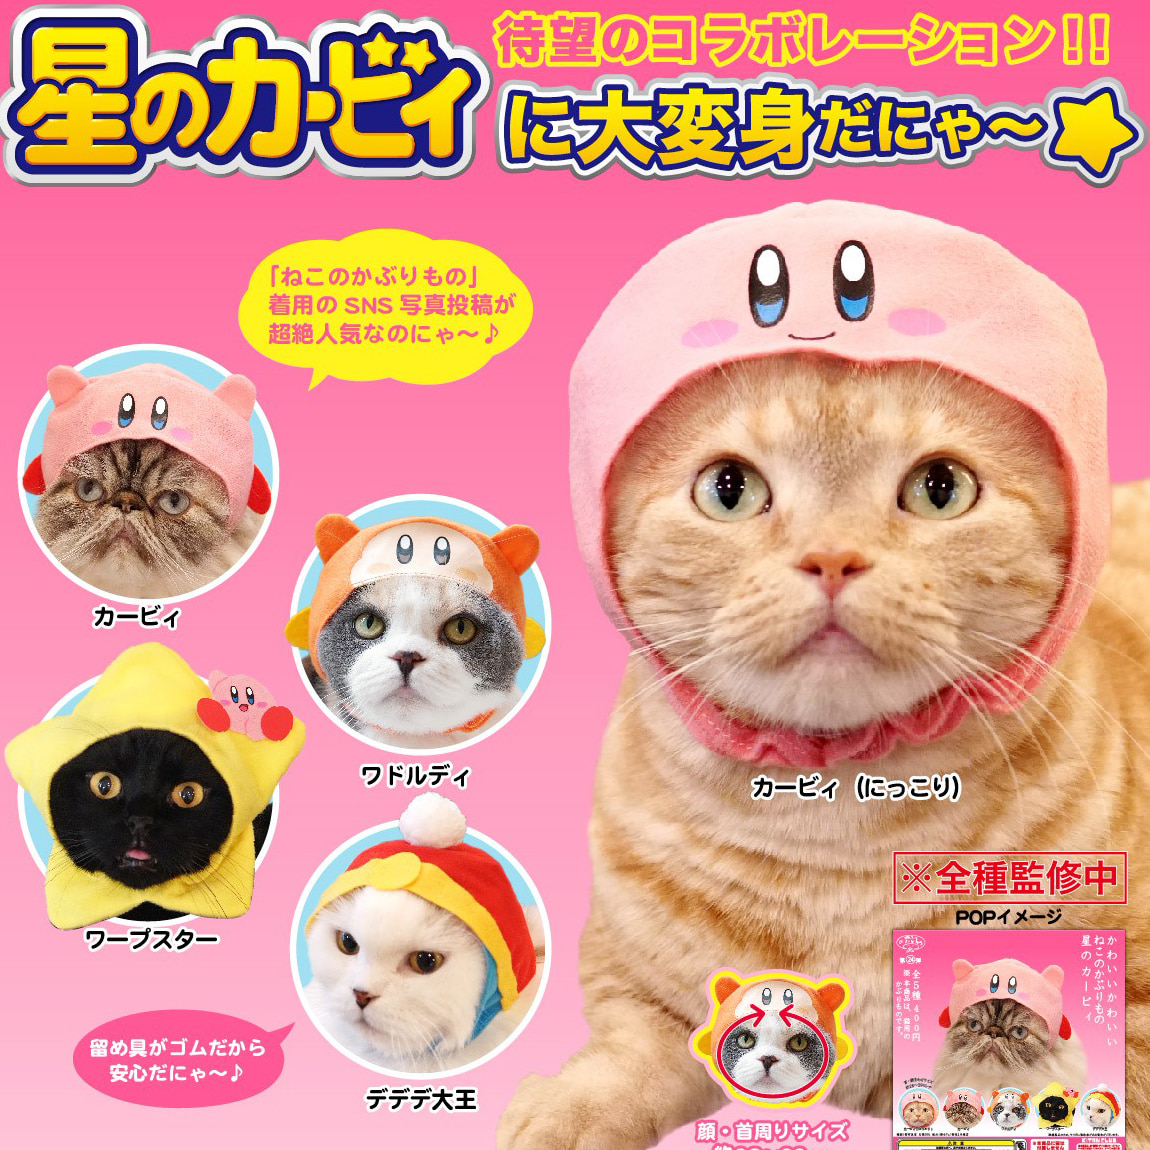 [가챠] 귀여운 고양이 모자 별의 커비샐러드마켓